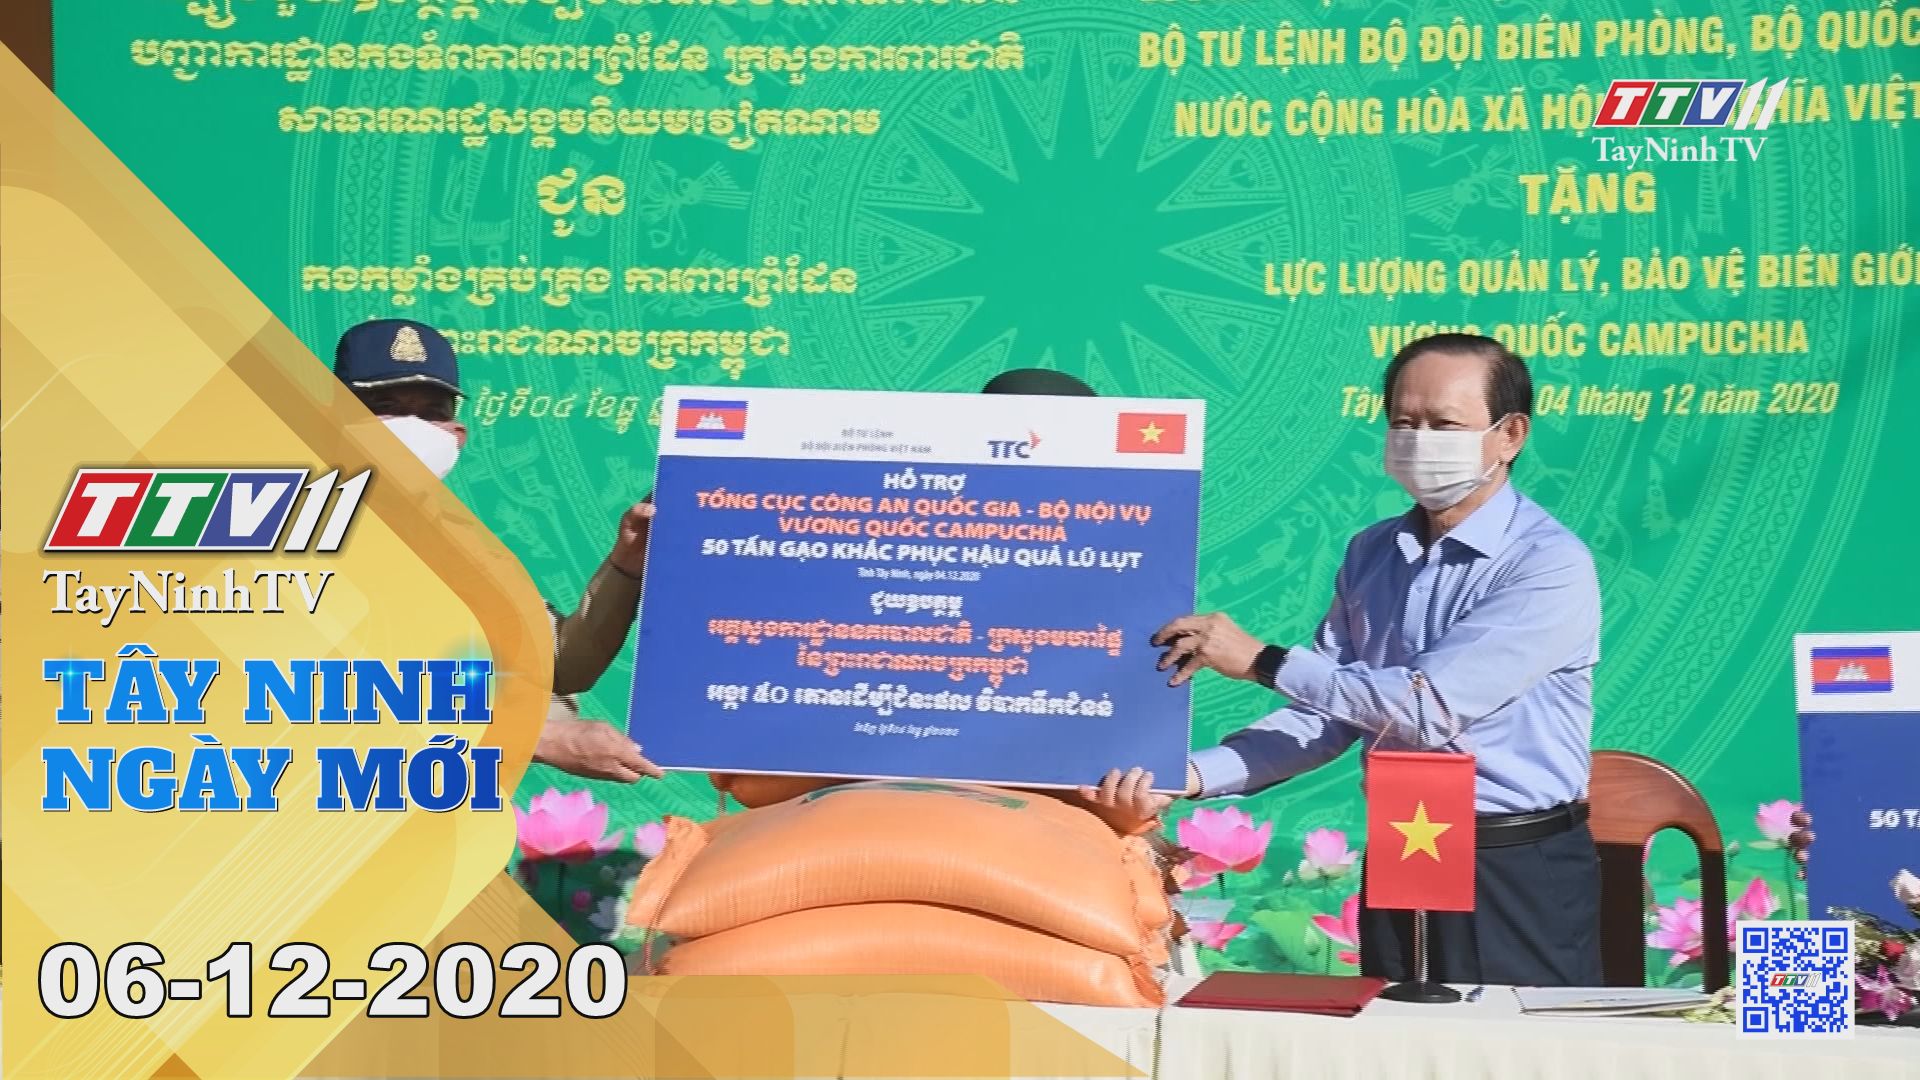 Tây Ninh Ngày Mới 06-12-2020 | Tin tức hôm nay | TayNinhTV 